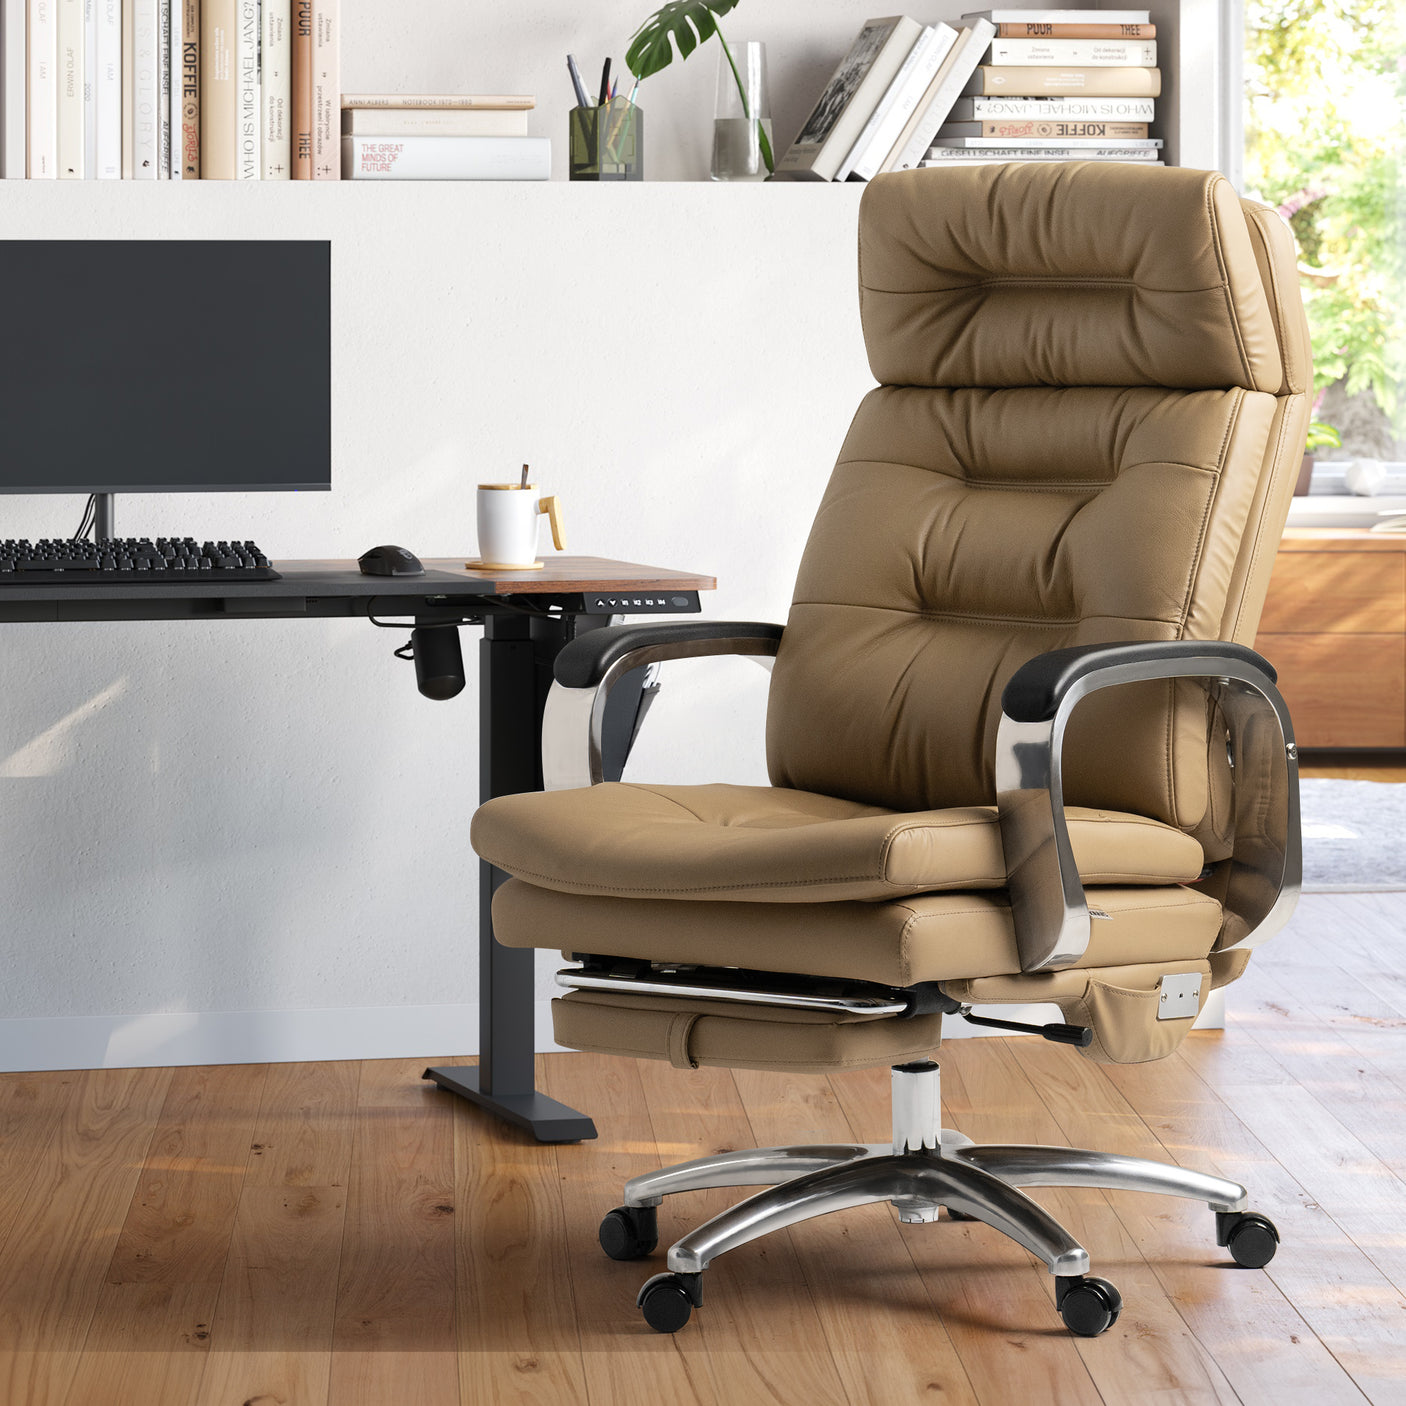 Hound pair Specialize Chaise de bureau ergonomique à dossier haut épais en cuir Vane – KINNLS